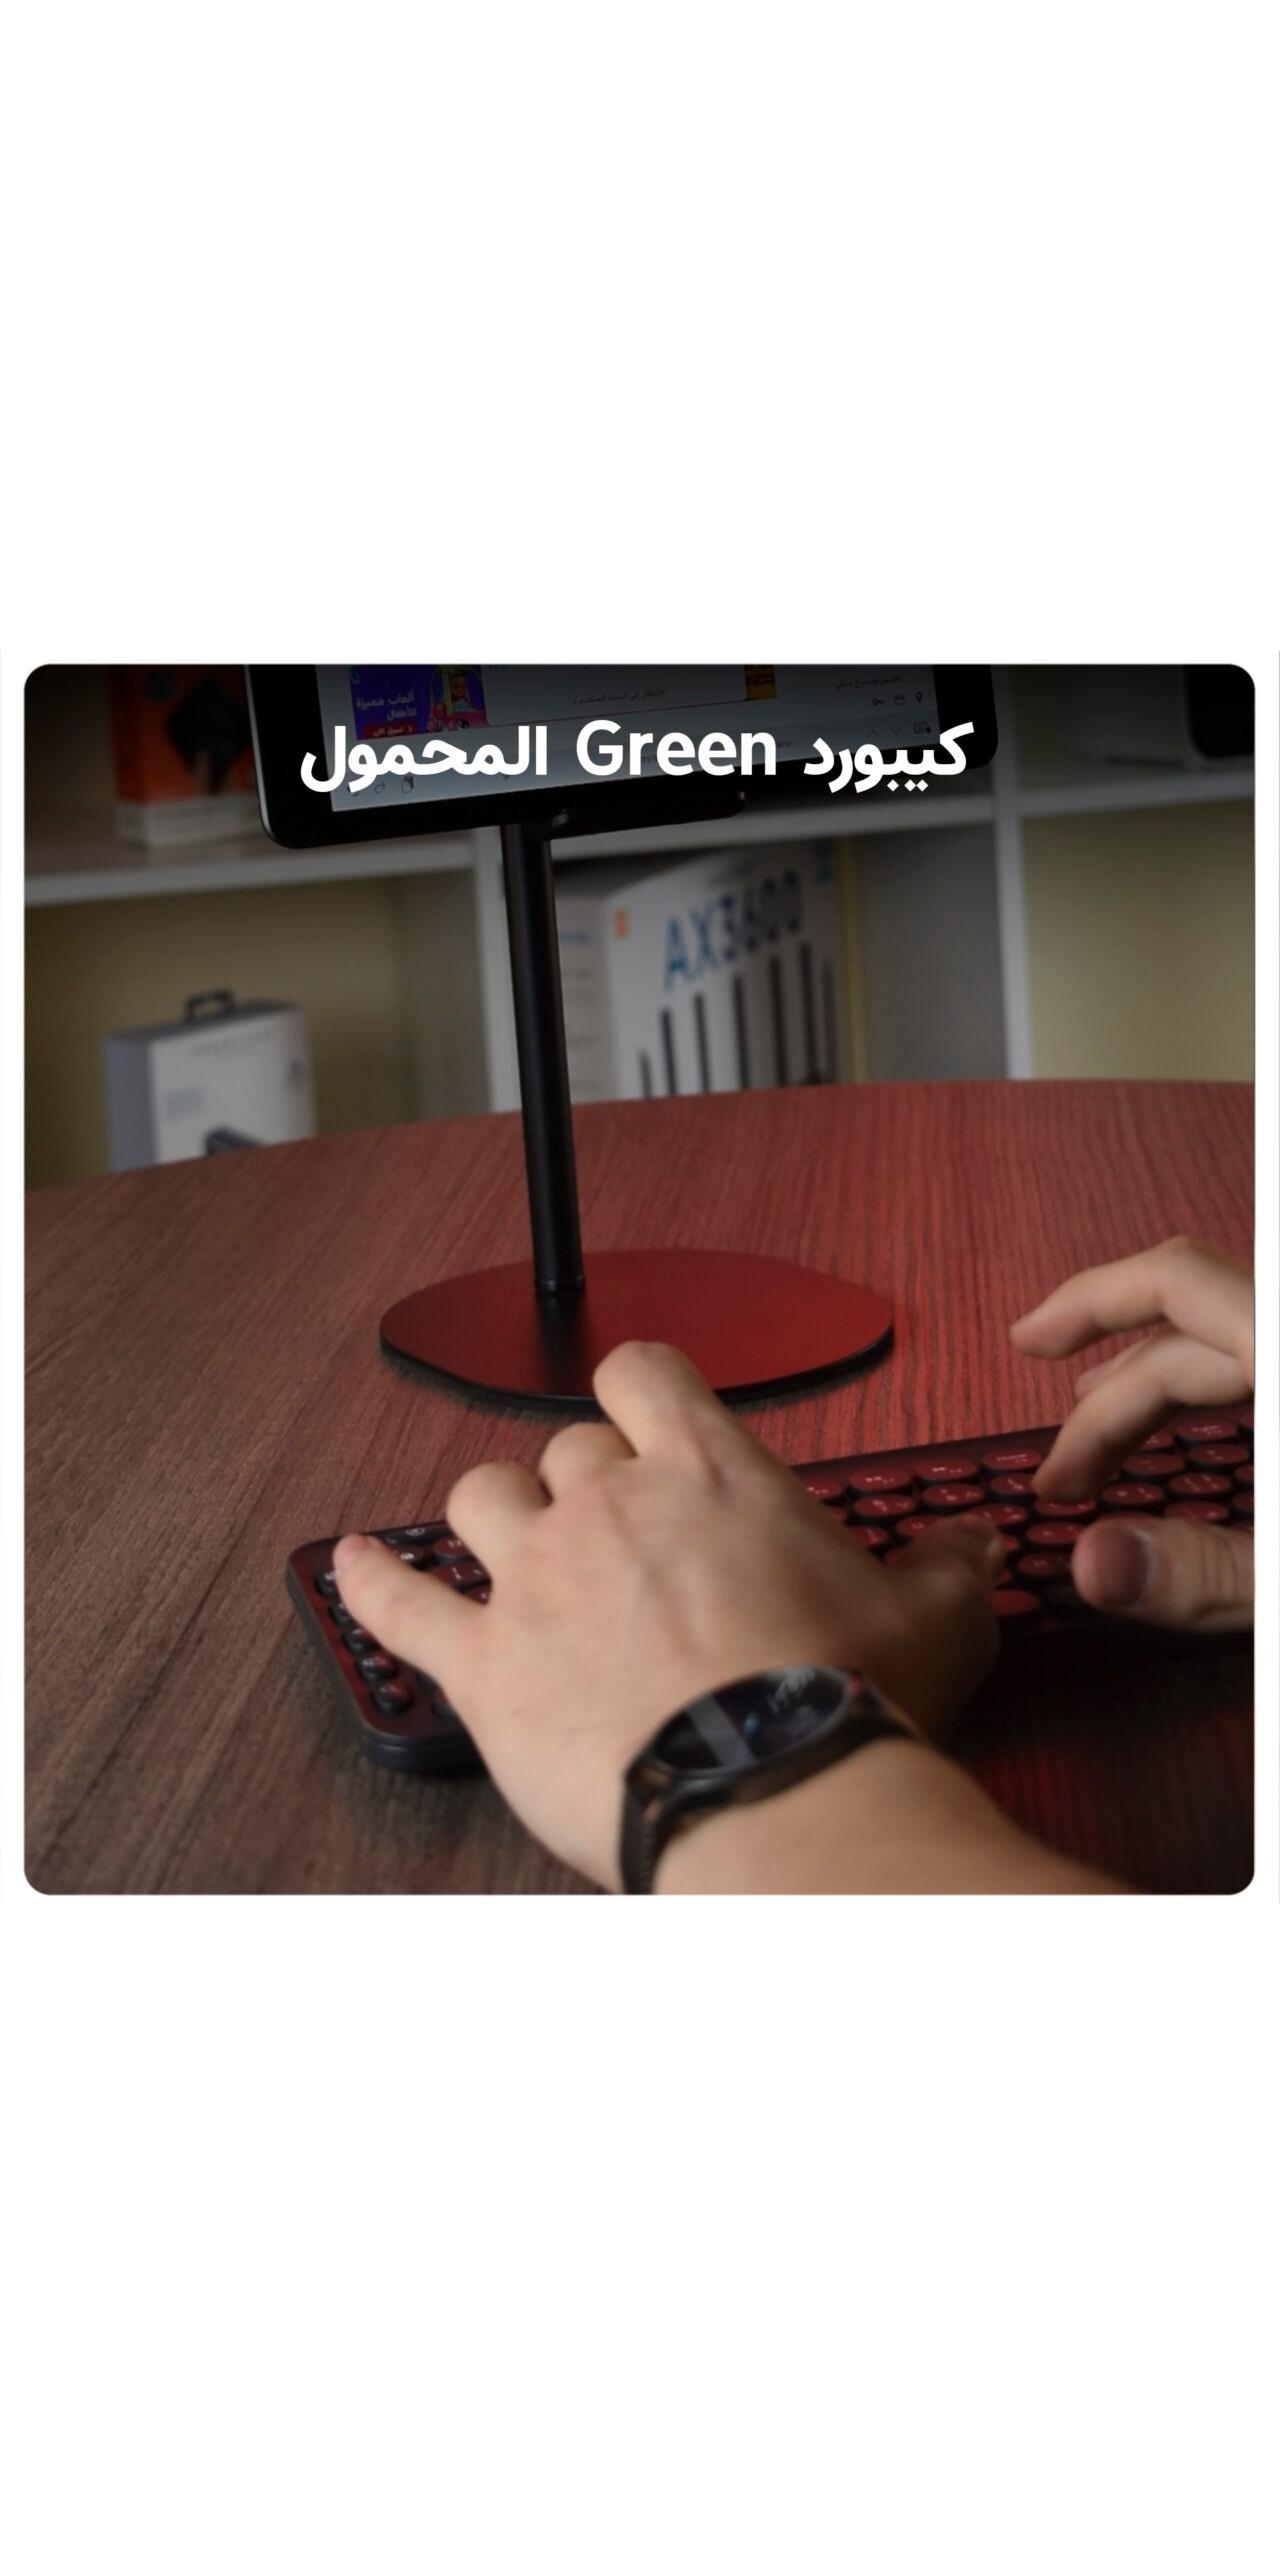 لوحة مفاتيح ( كيبورد ) لاسلكية  باللغة الانجليزية / العربية مع لوحة لمس - أسود Green Dual Mode Portable Wireless Keyboard ( English / Arabic )